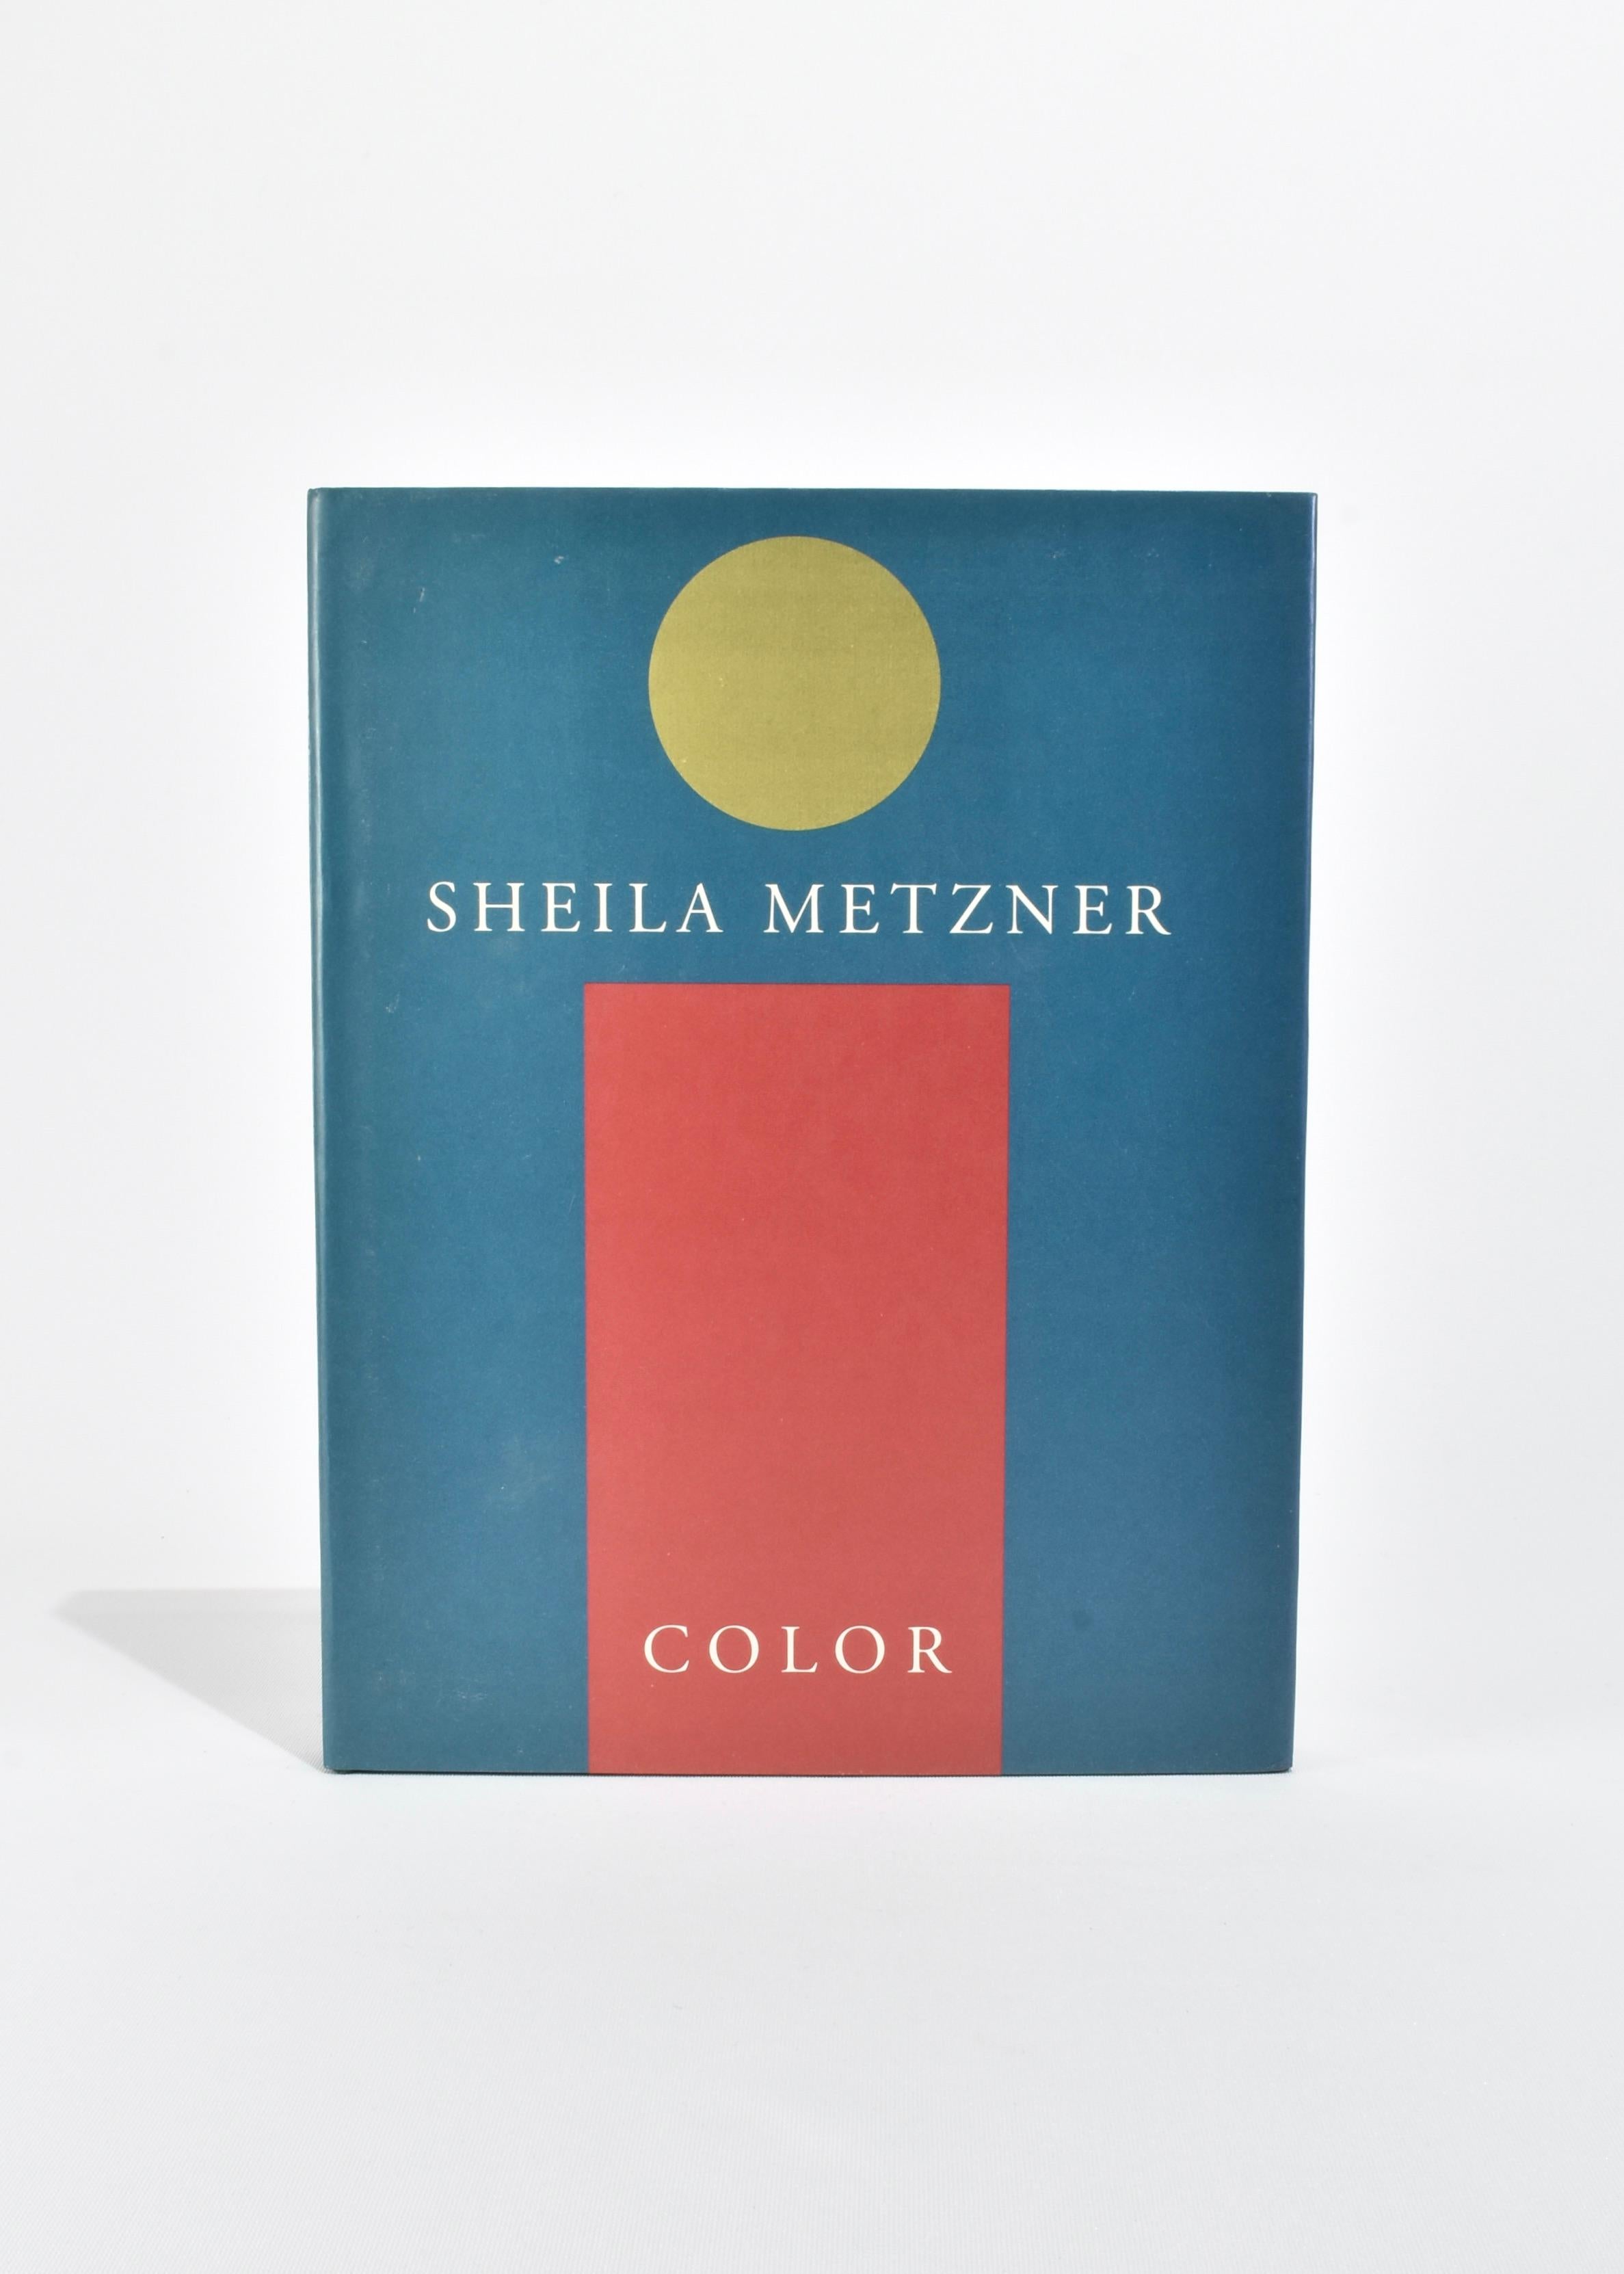 Gebundener Bildband mit den Arbeiten der Fotografin Sheila Metzner. Von Sheila Metzner, veröffentlicht 1991. Erstausgabe.

